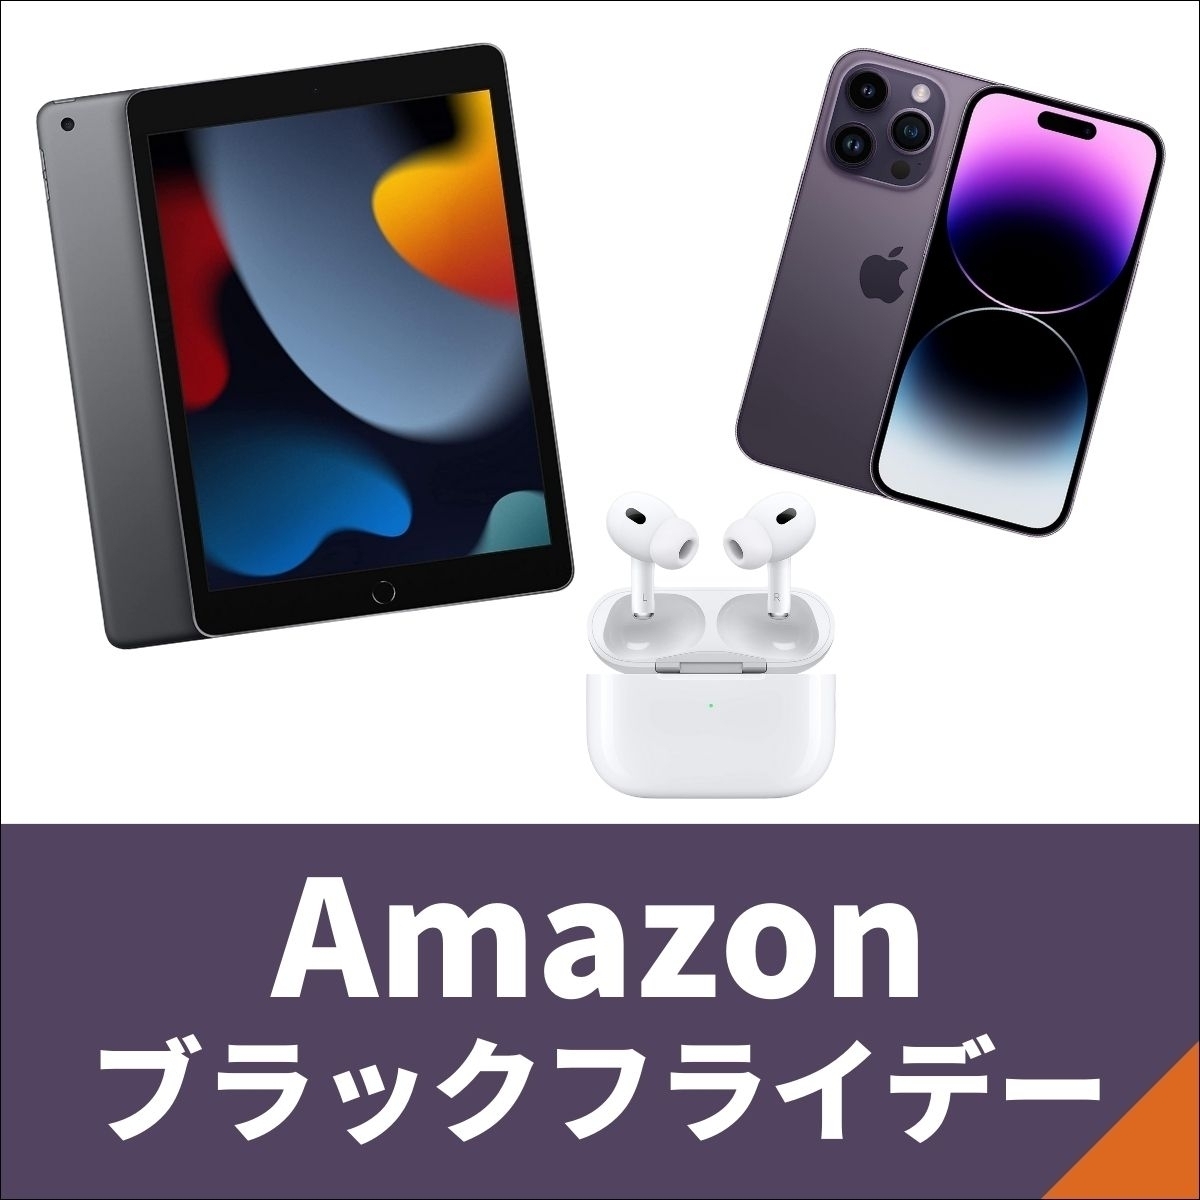 【Amazonブラックフライデー】Apple製品が先行セールに登場